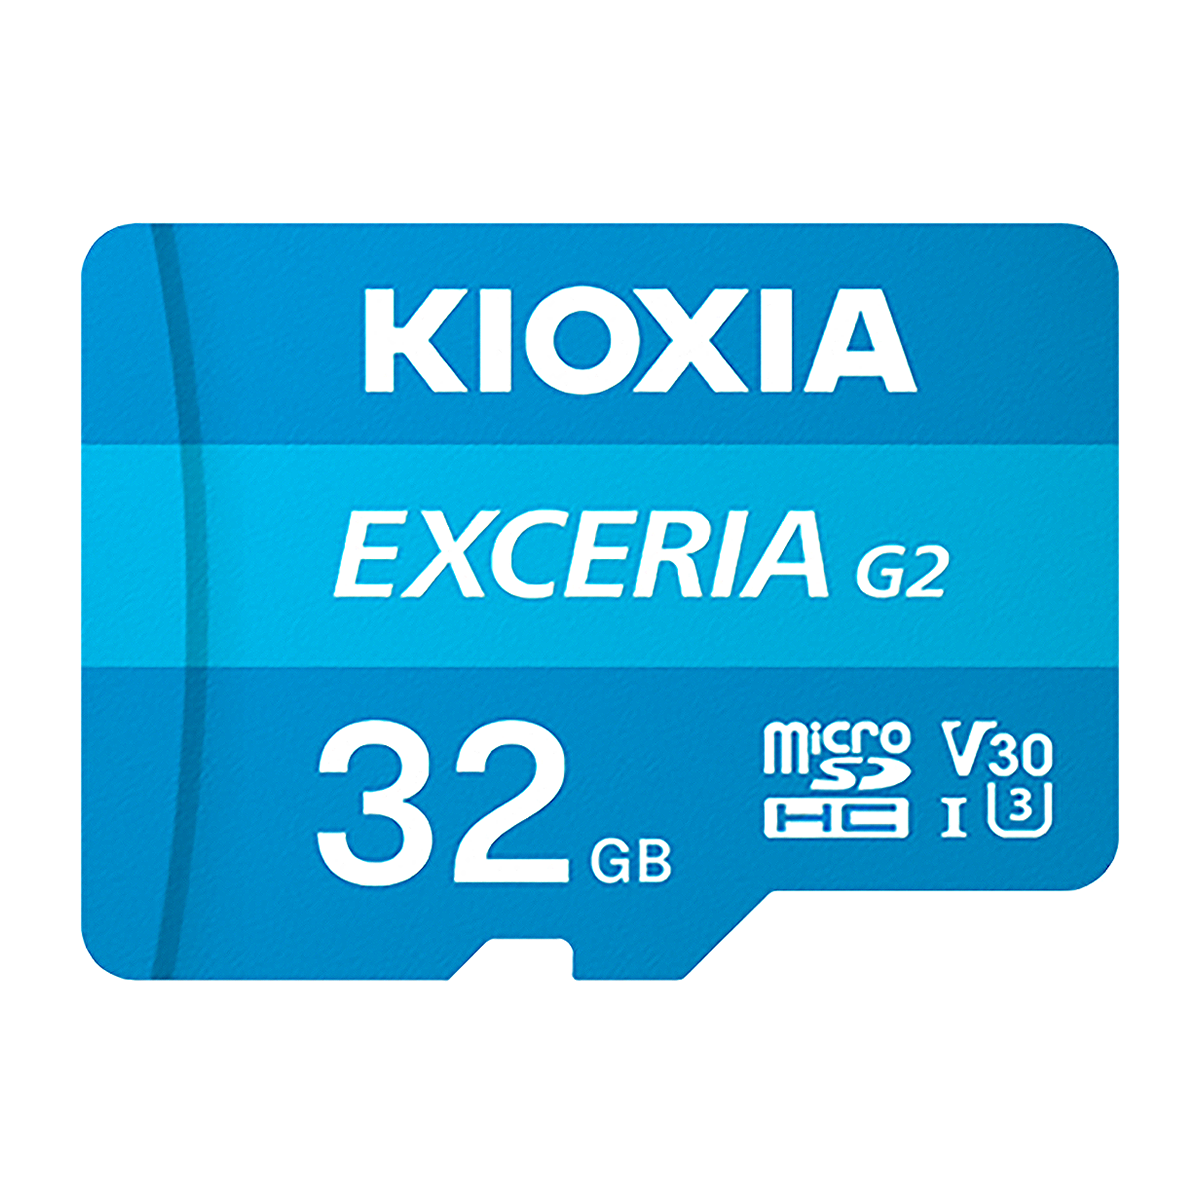 کارت حافظه microSDHC کیوکسیا مدل EXCERIA G2 کلاس 10 استاندارد UHS-I سرعت 100MBps ظرفیت 32 گیگابایت-small-image